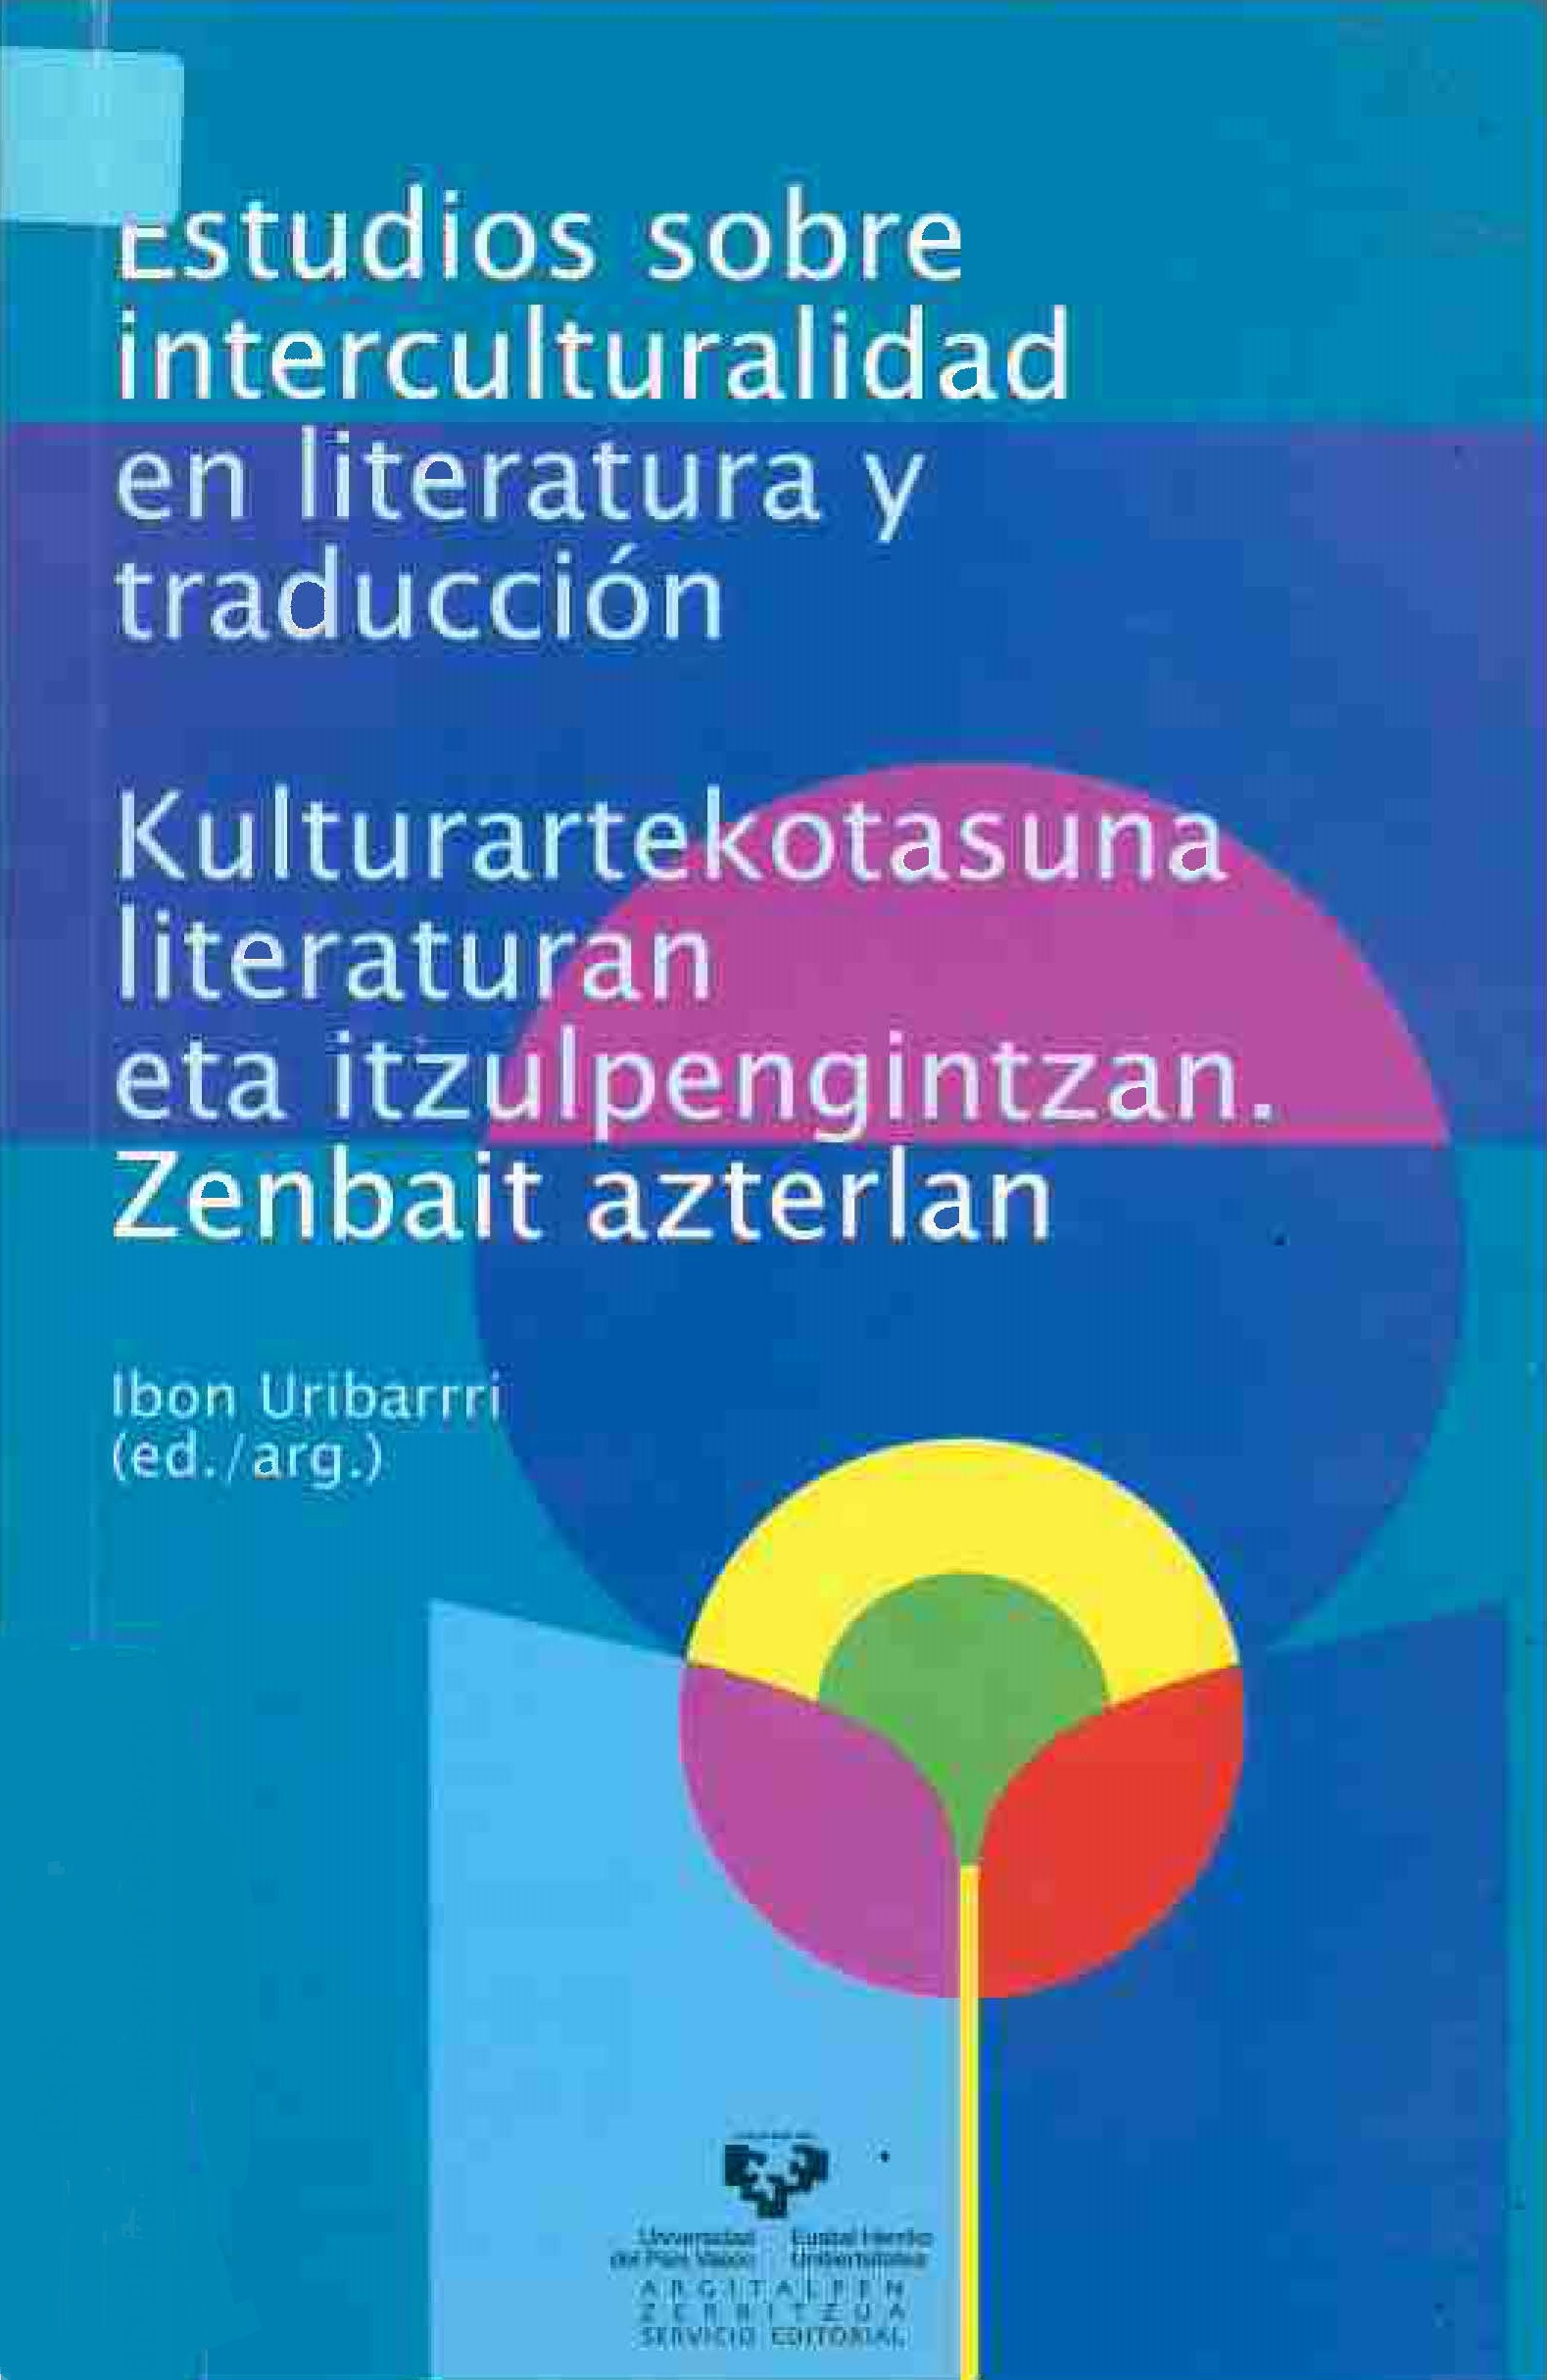 Imagen de portada del libro Estudios sobre interculturalidad en literatura y traducción